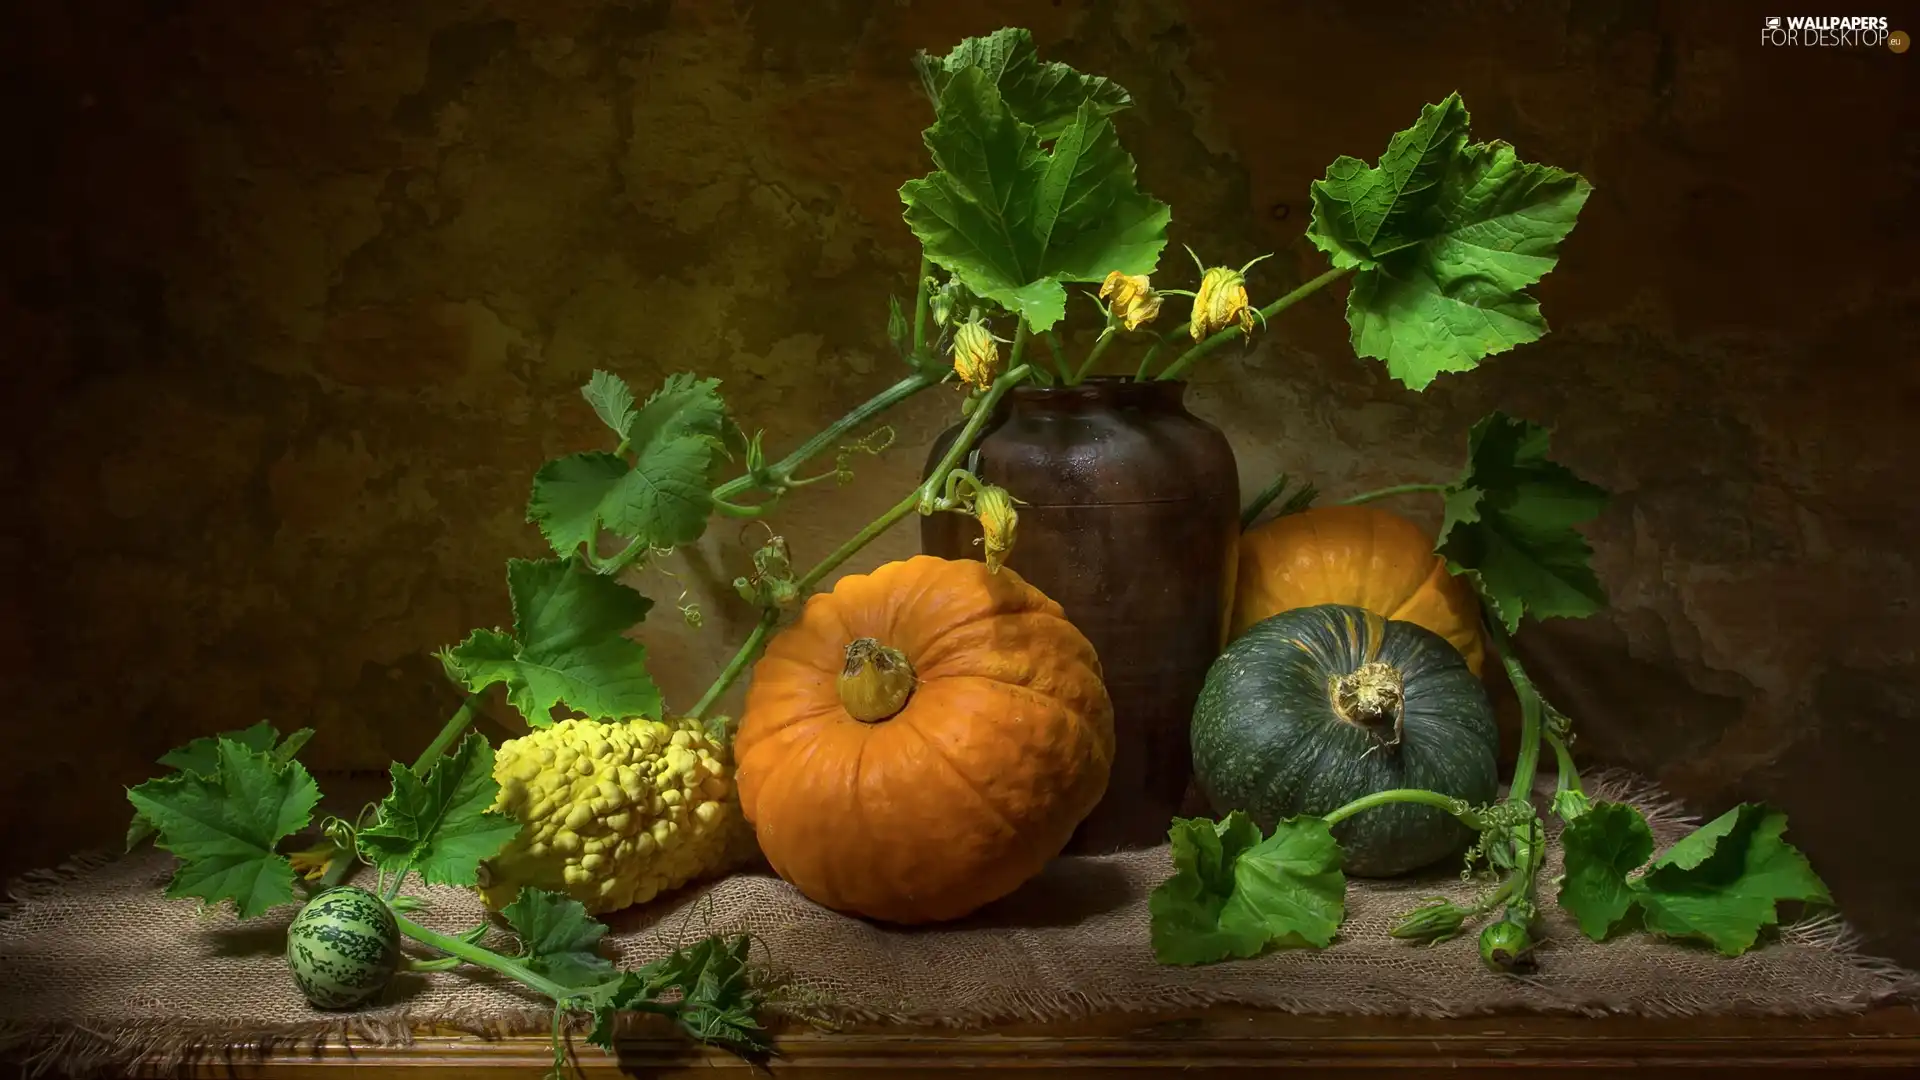 Leaf, pumpkin, Vase